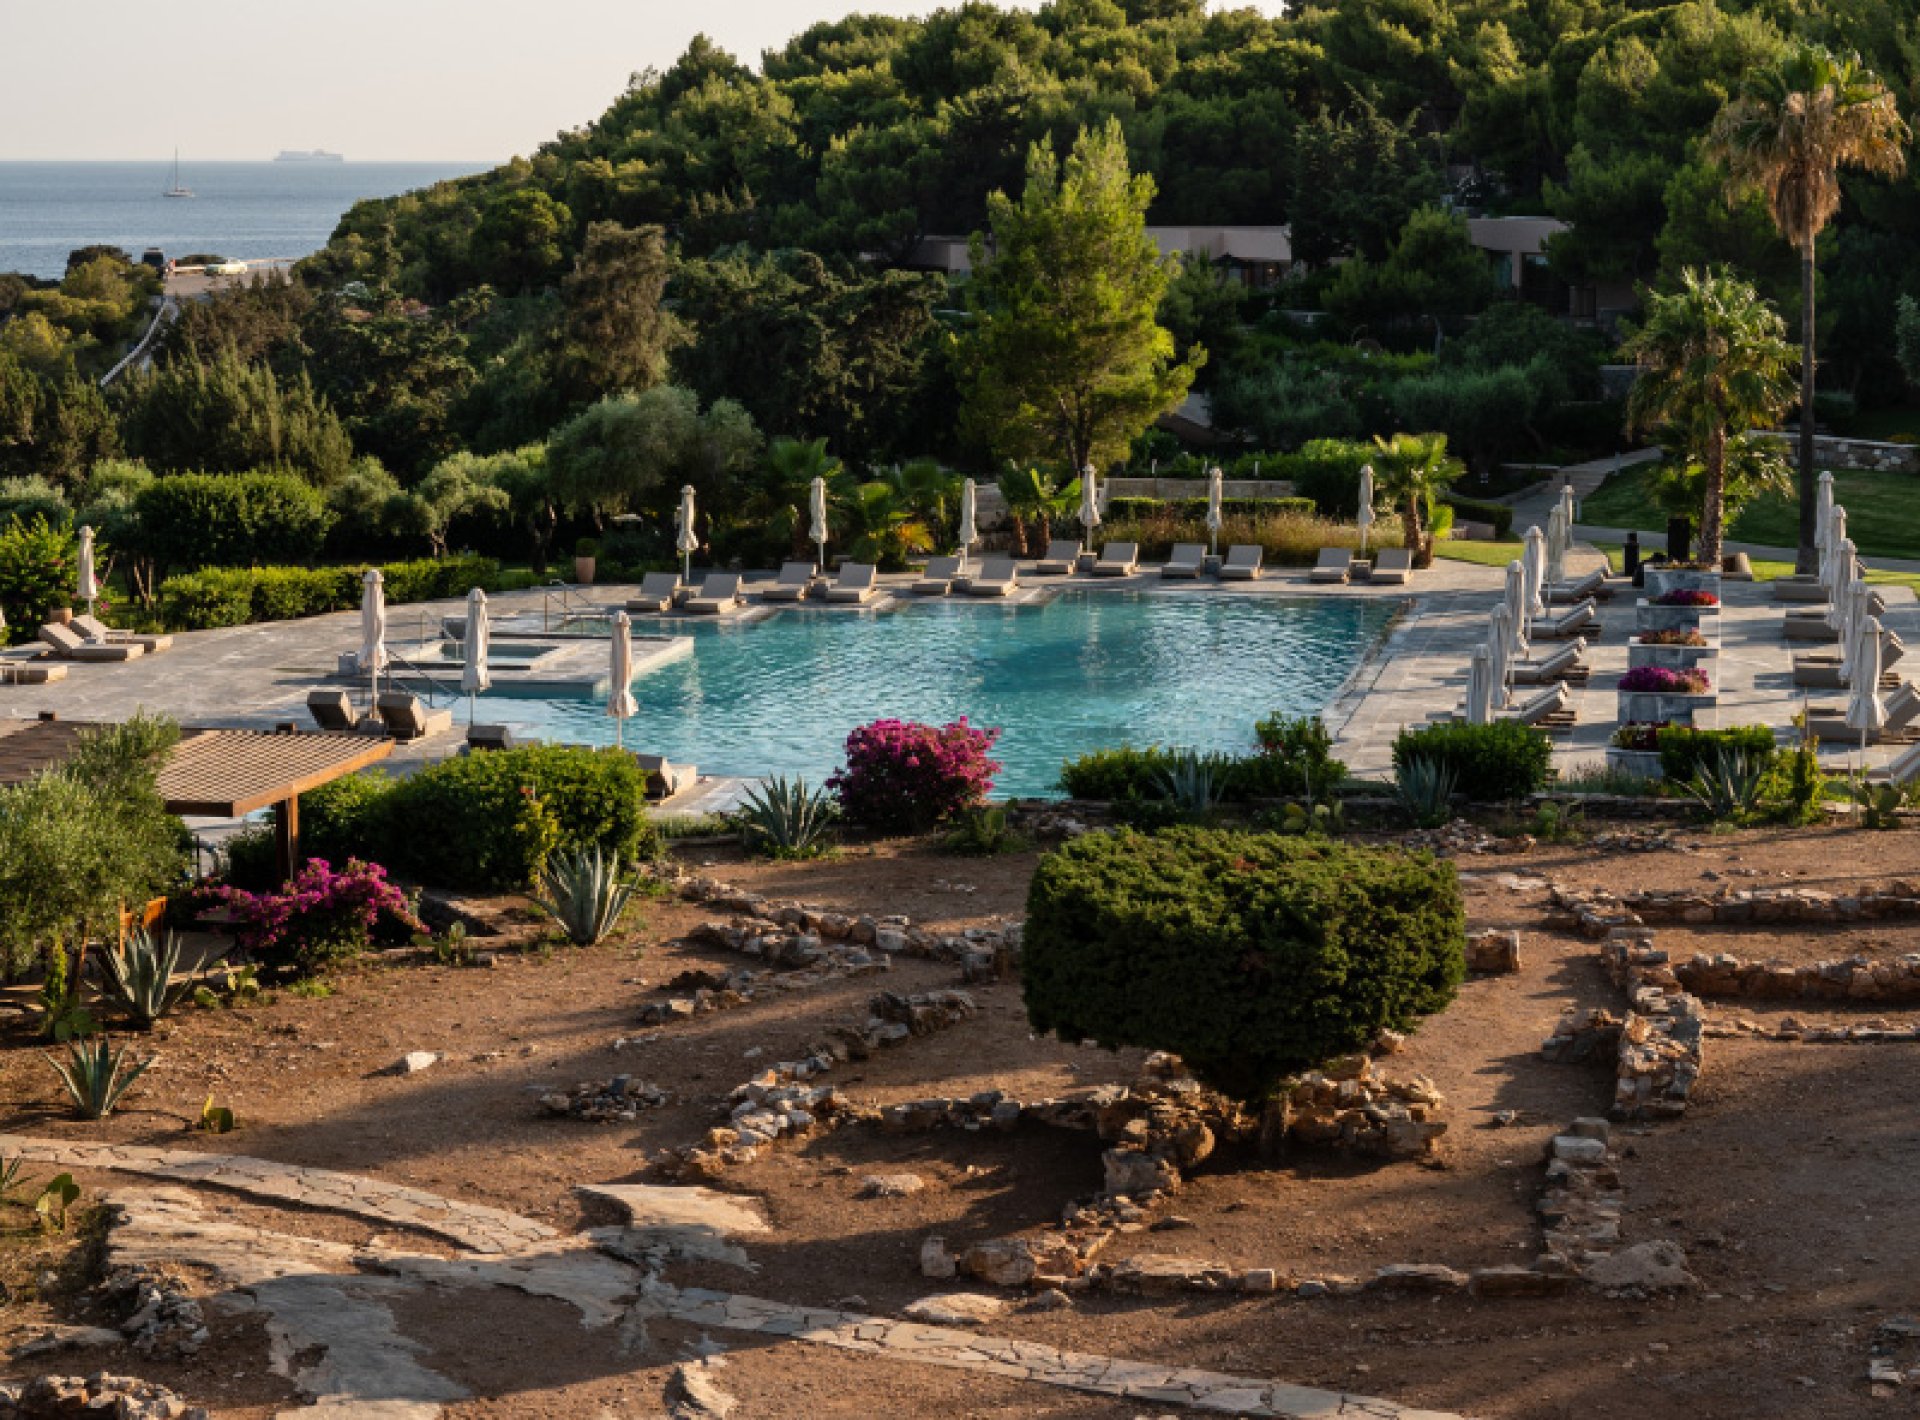 ISholidays Atenas Cape Sounio Deluxe Family Villa Private Pool